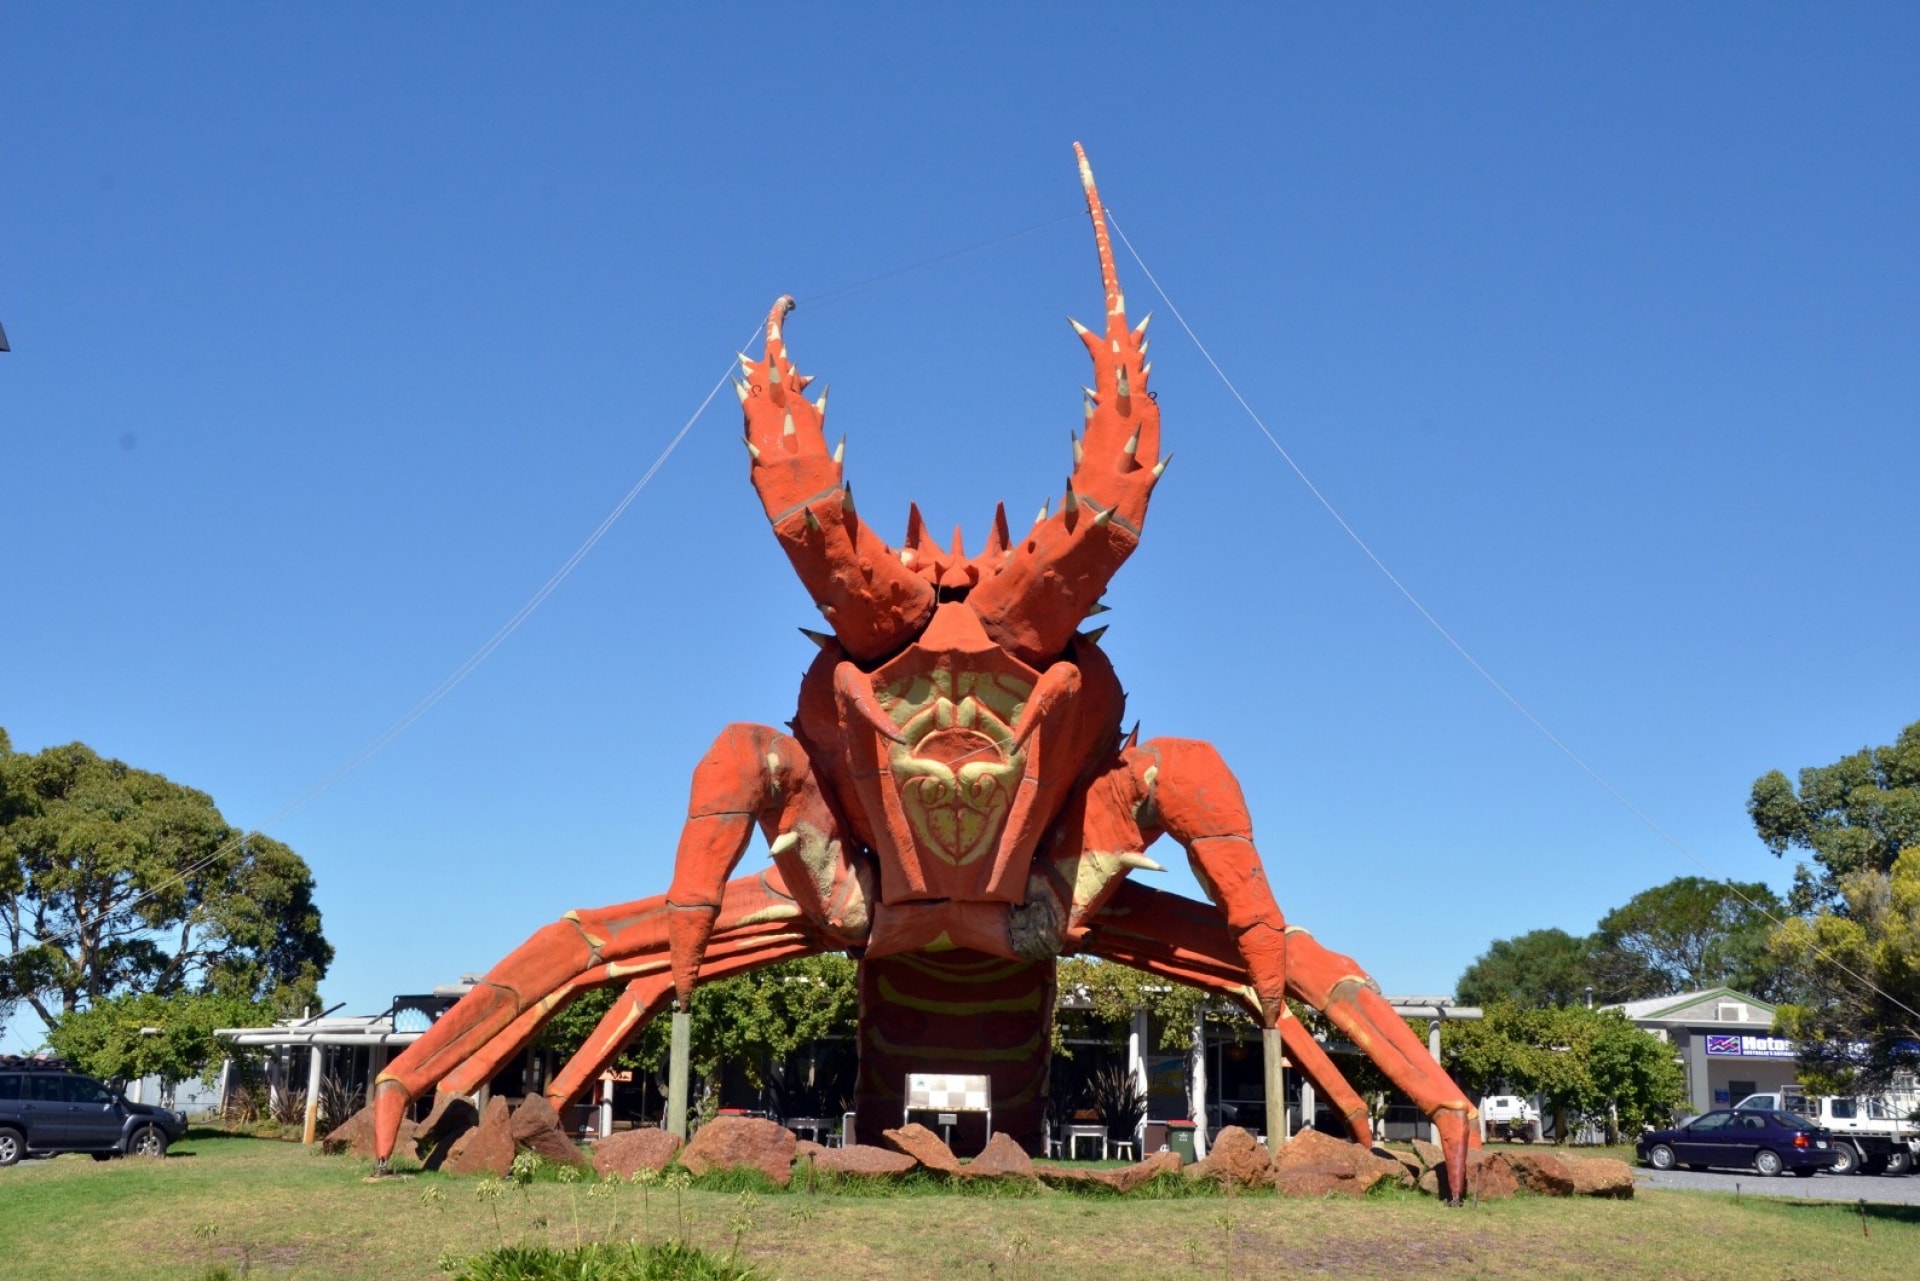 Le Big Lobster, Kingston, Australie du Sud © South Australian Tourism Commission